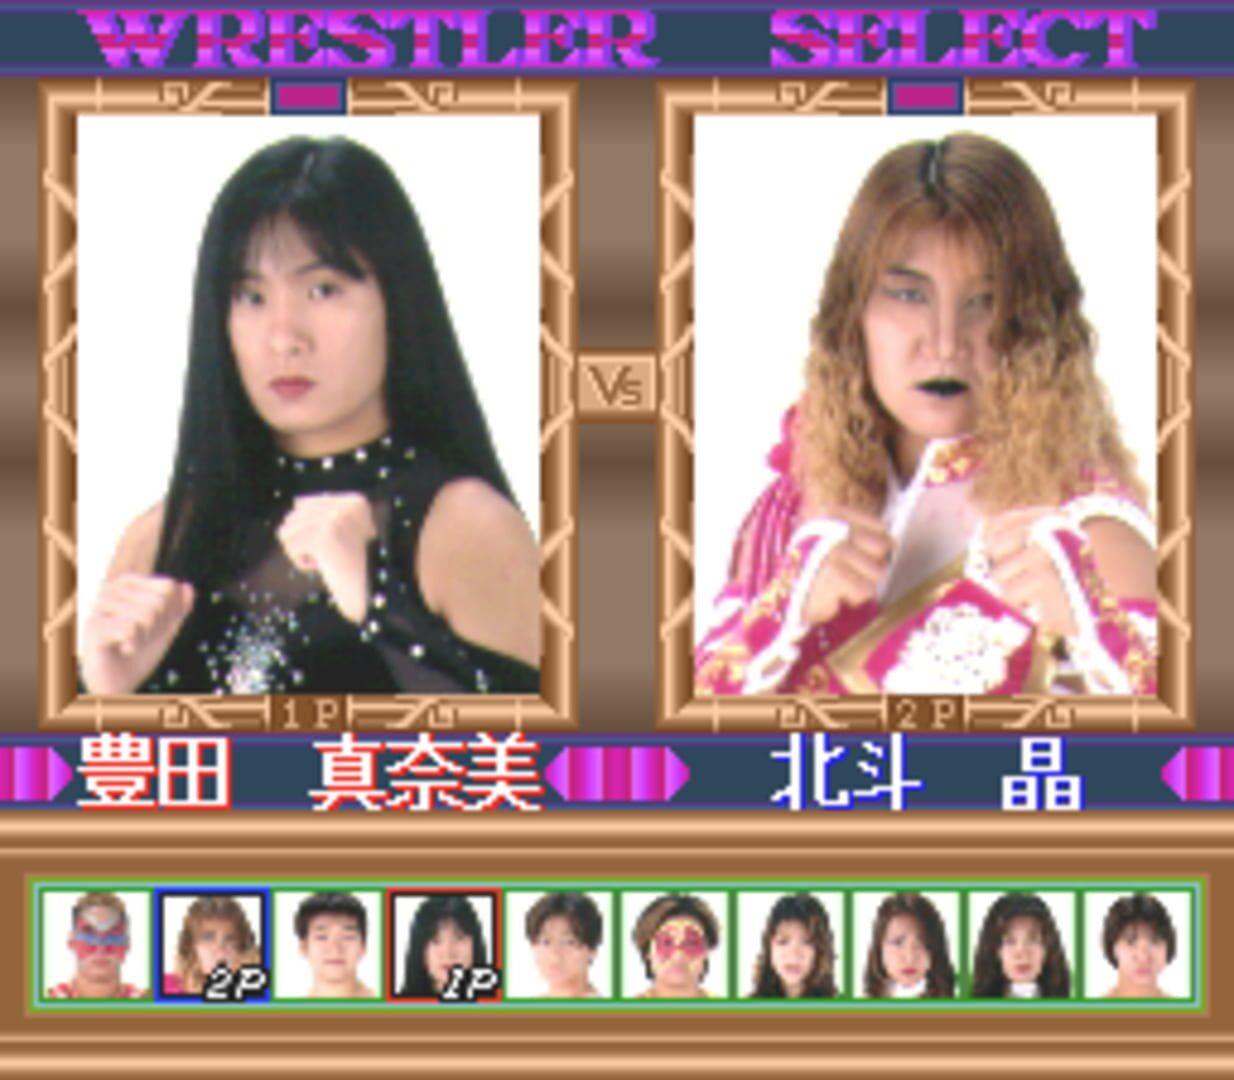 Captura de pantalla - Zen-Nippon Joshi Pro Wrestling: Queen of Queens